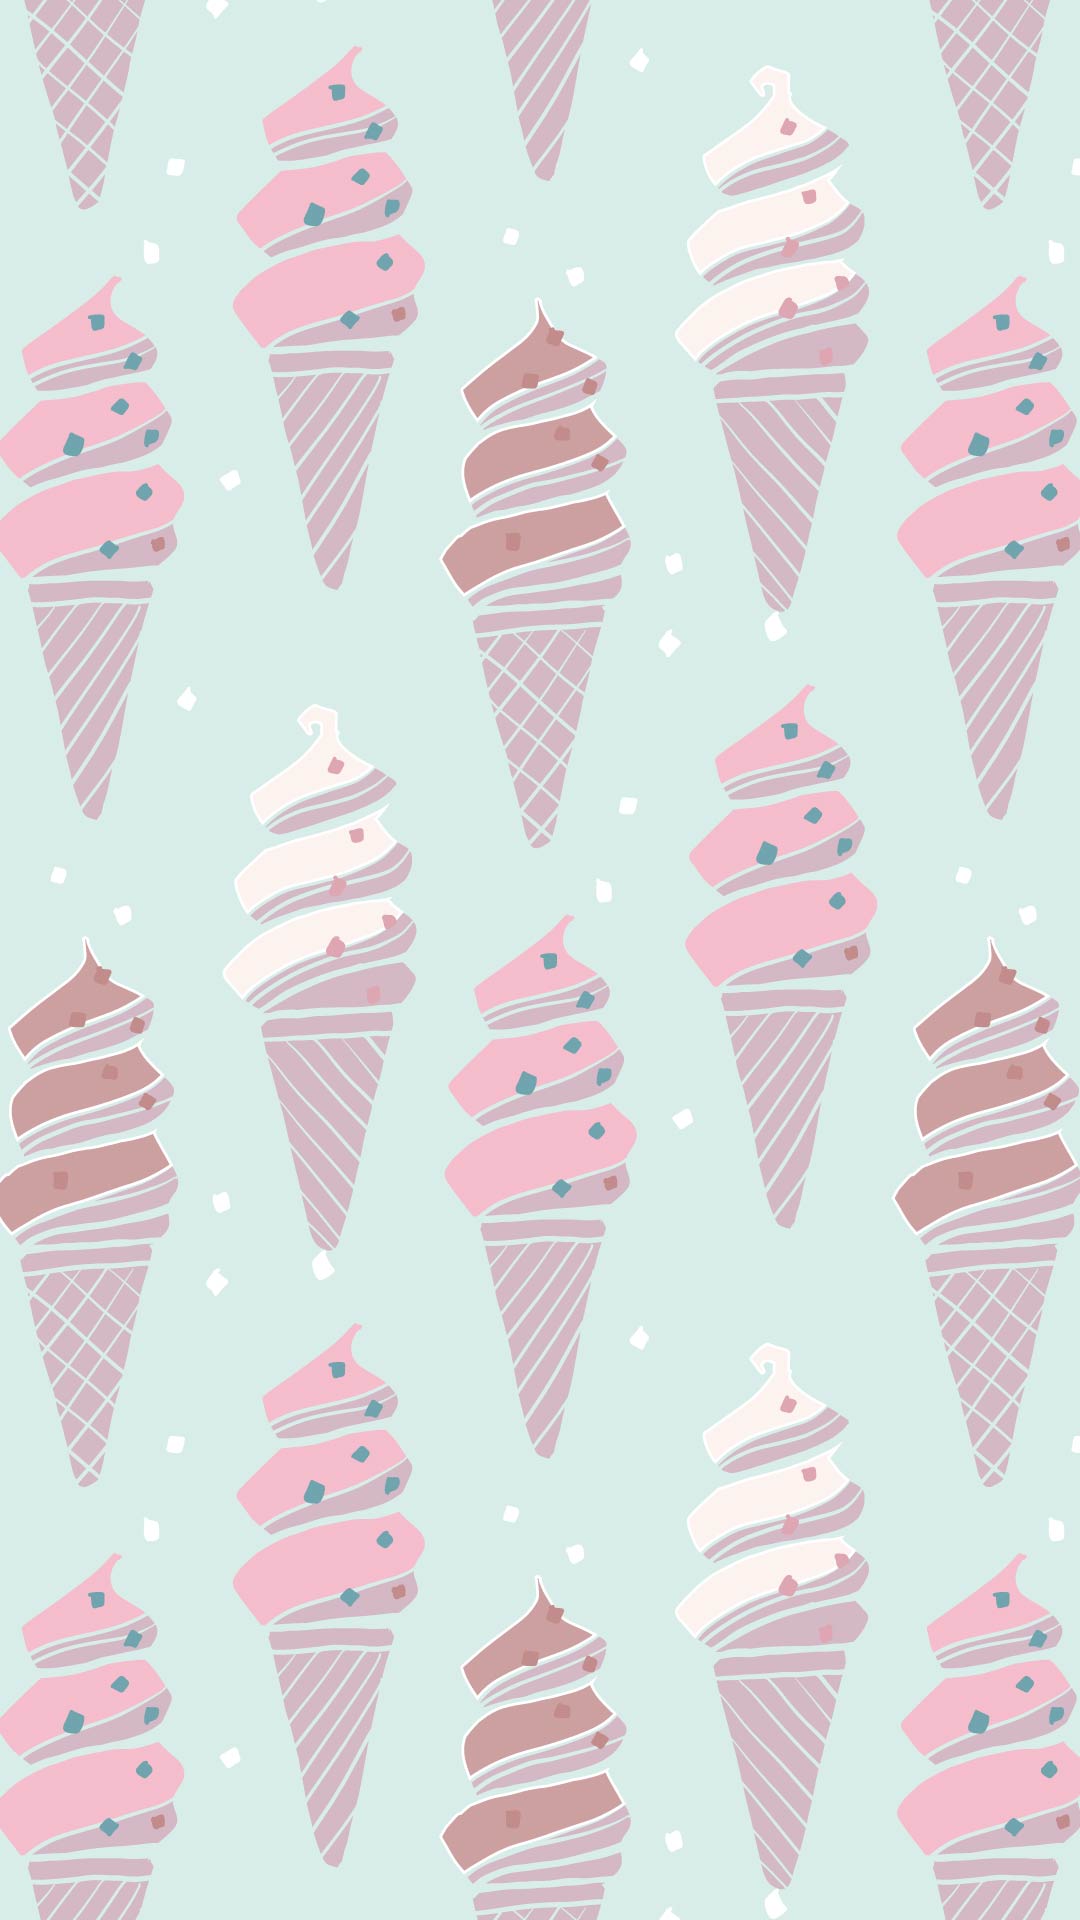 薄いエメラルドグリーンの背景にピンクと白と茶色のソフトクリームのパターン